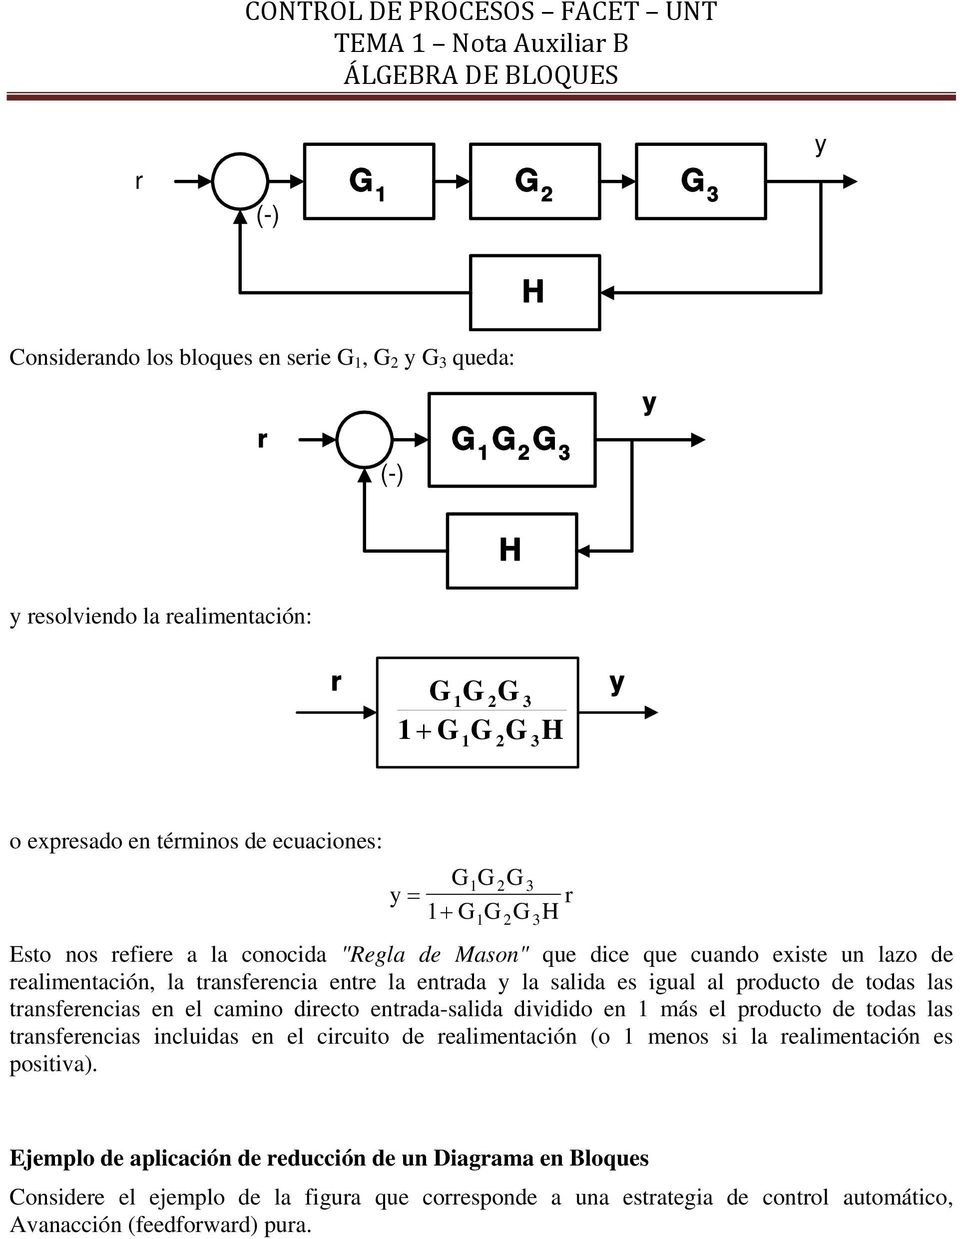 trnsferencis en el cmino directo entrd-slid dividido en 1 más el producto de tods ls trnsferencis incluids en el circuito de relimentción (o 1 menos si l relimentción